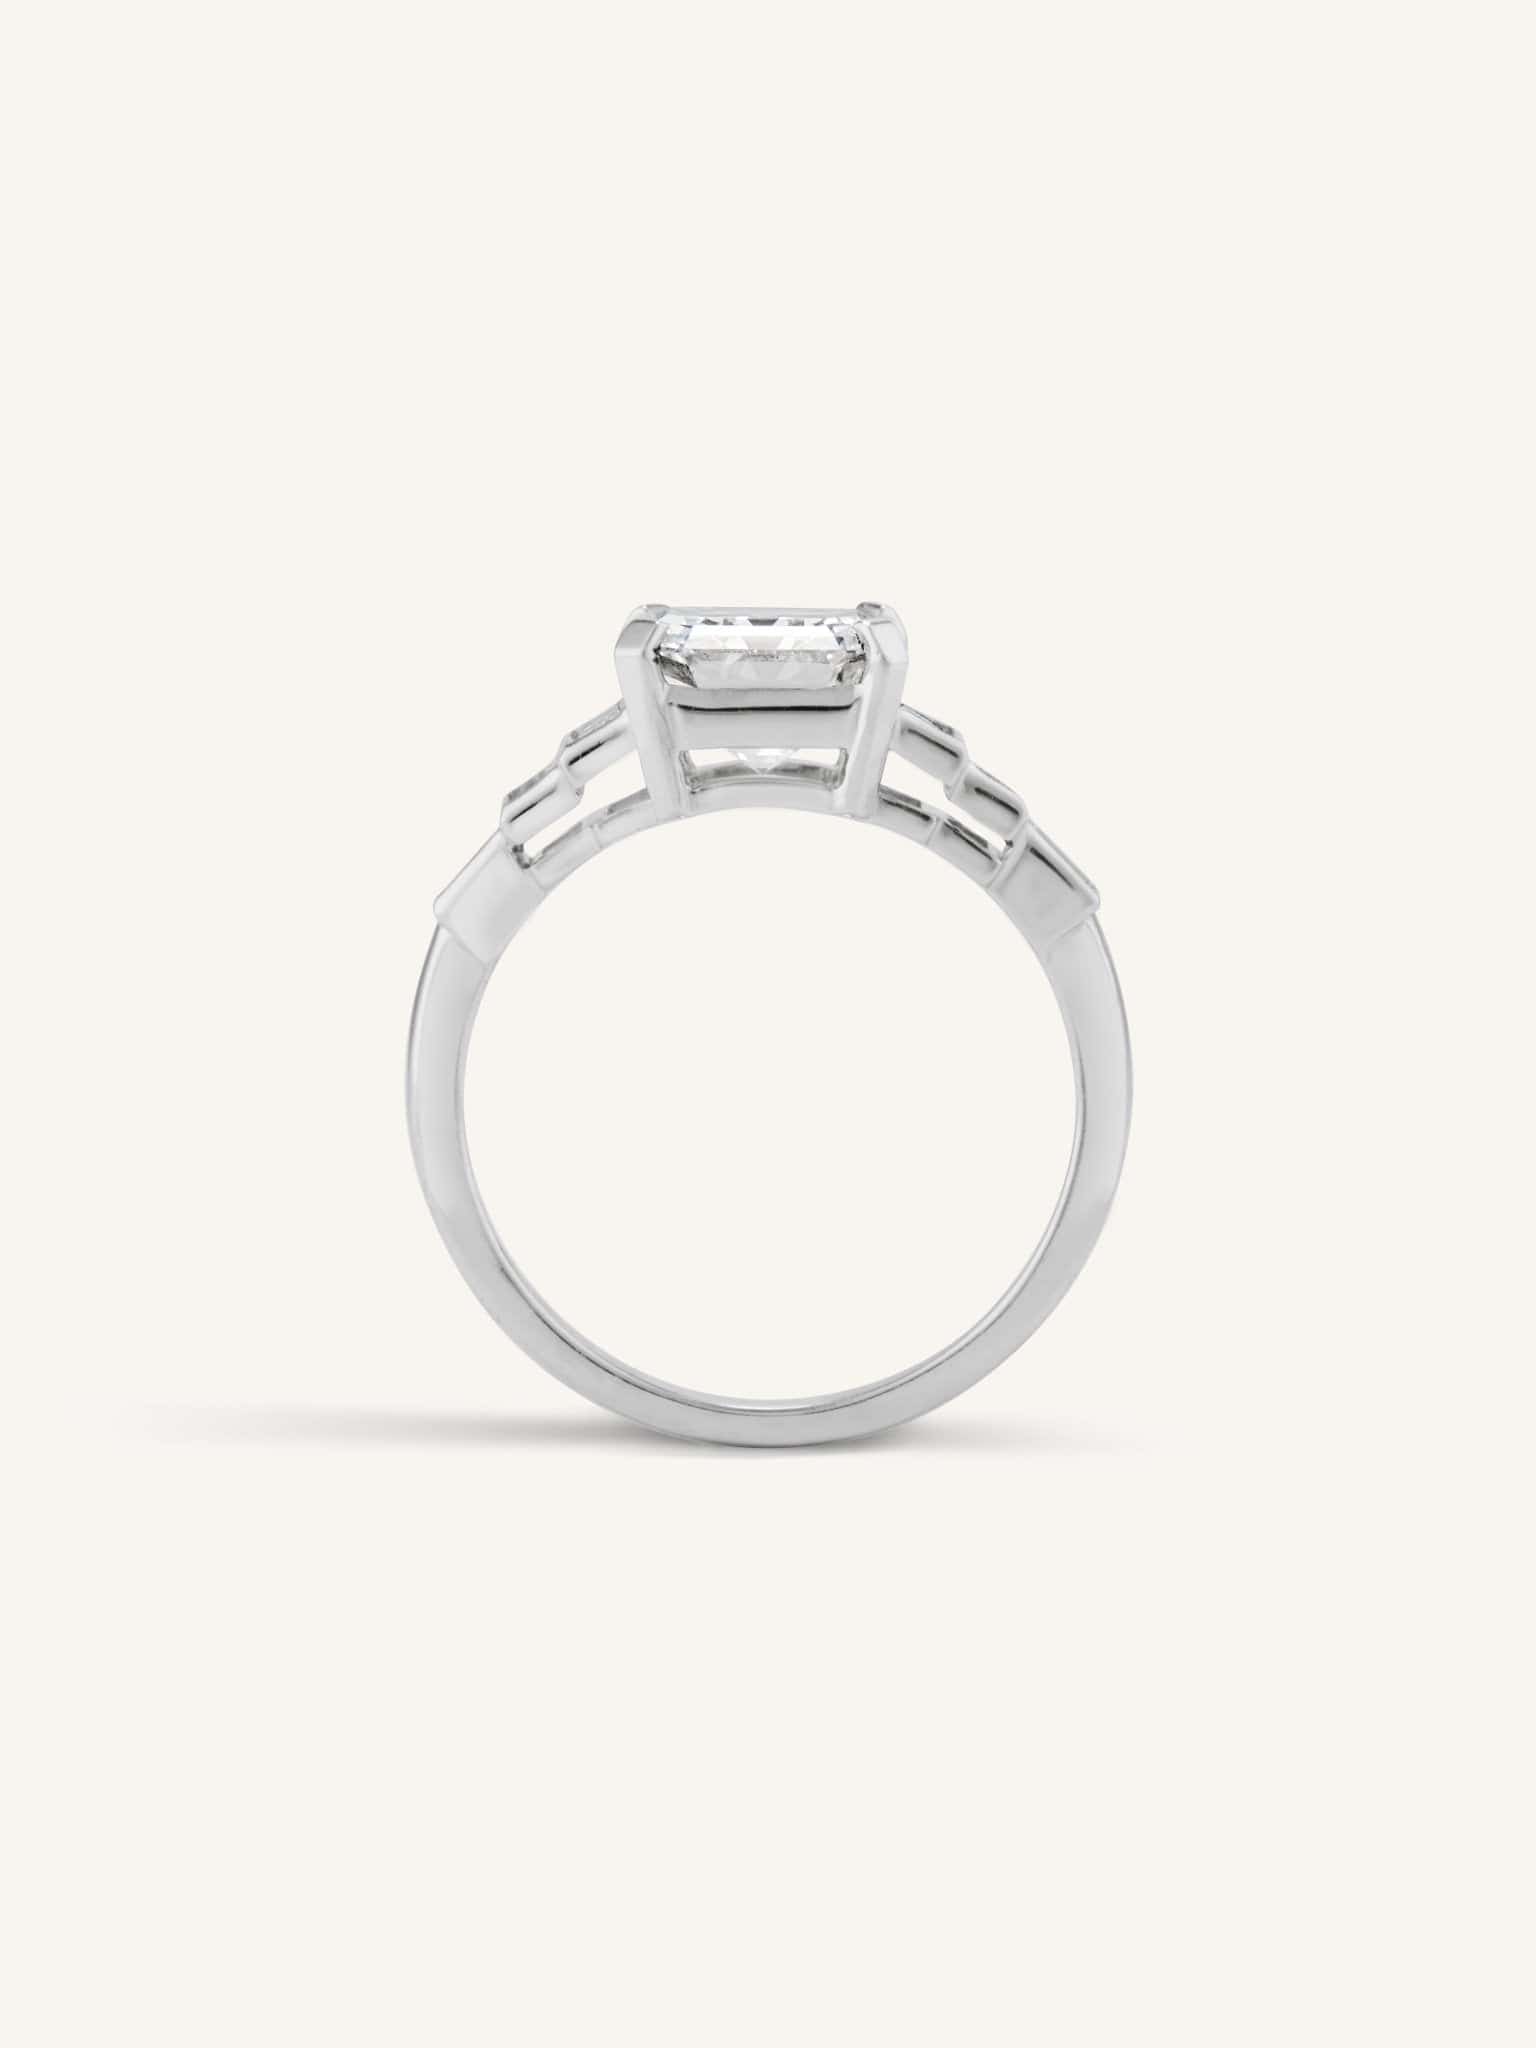 Buy Gold Diamond Ring//24k Gold Diamond Ring//diamond Engagement Ring//22k  Gold Engagement//artisan Diamond Ring//boho Engagement Ring Online in India  - Etsy